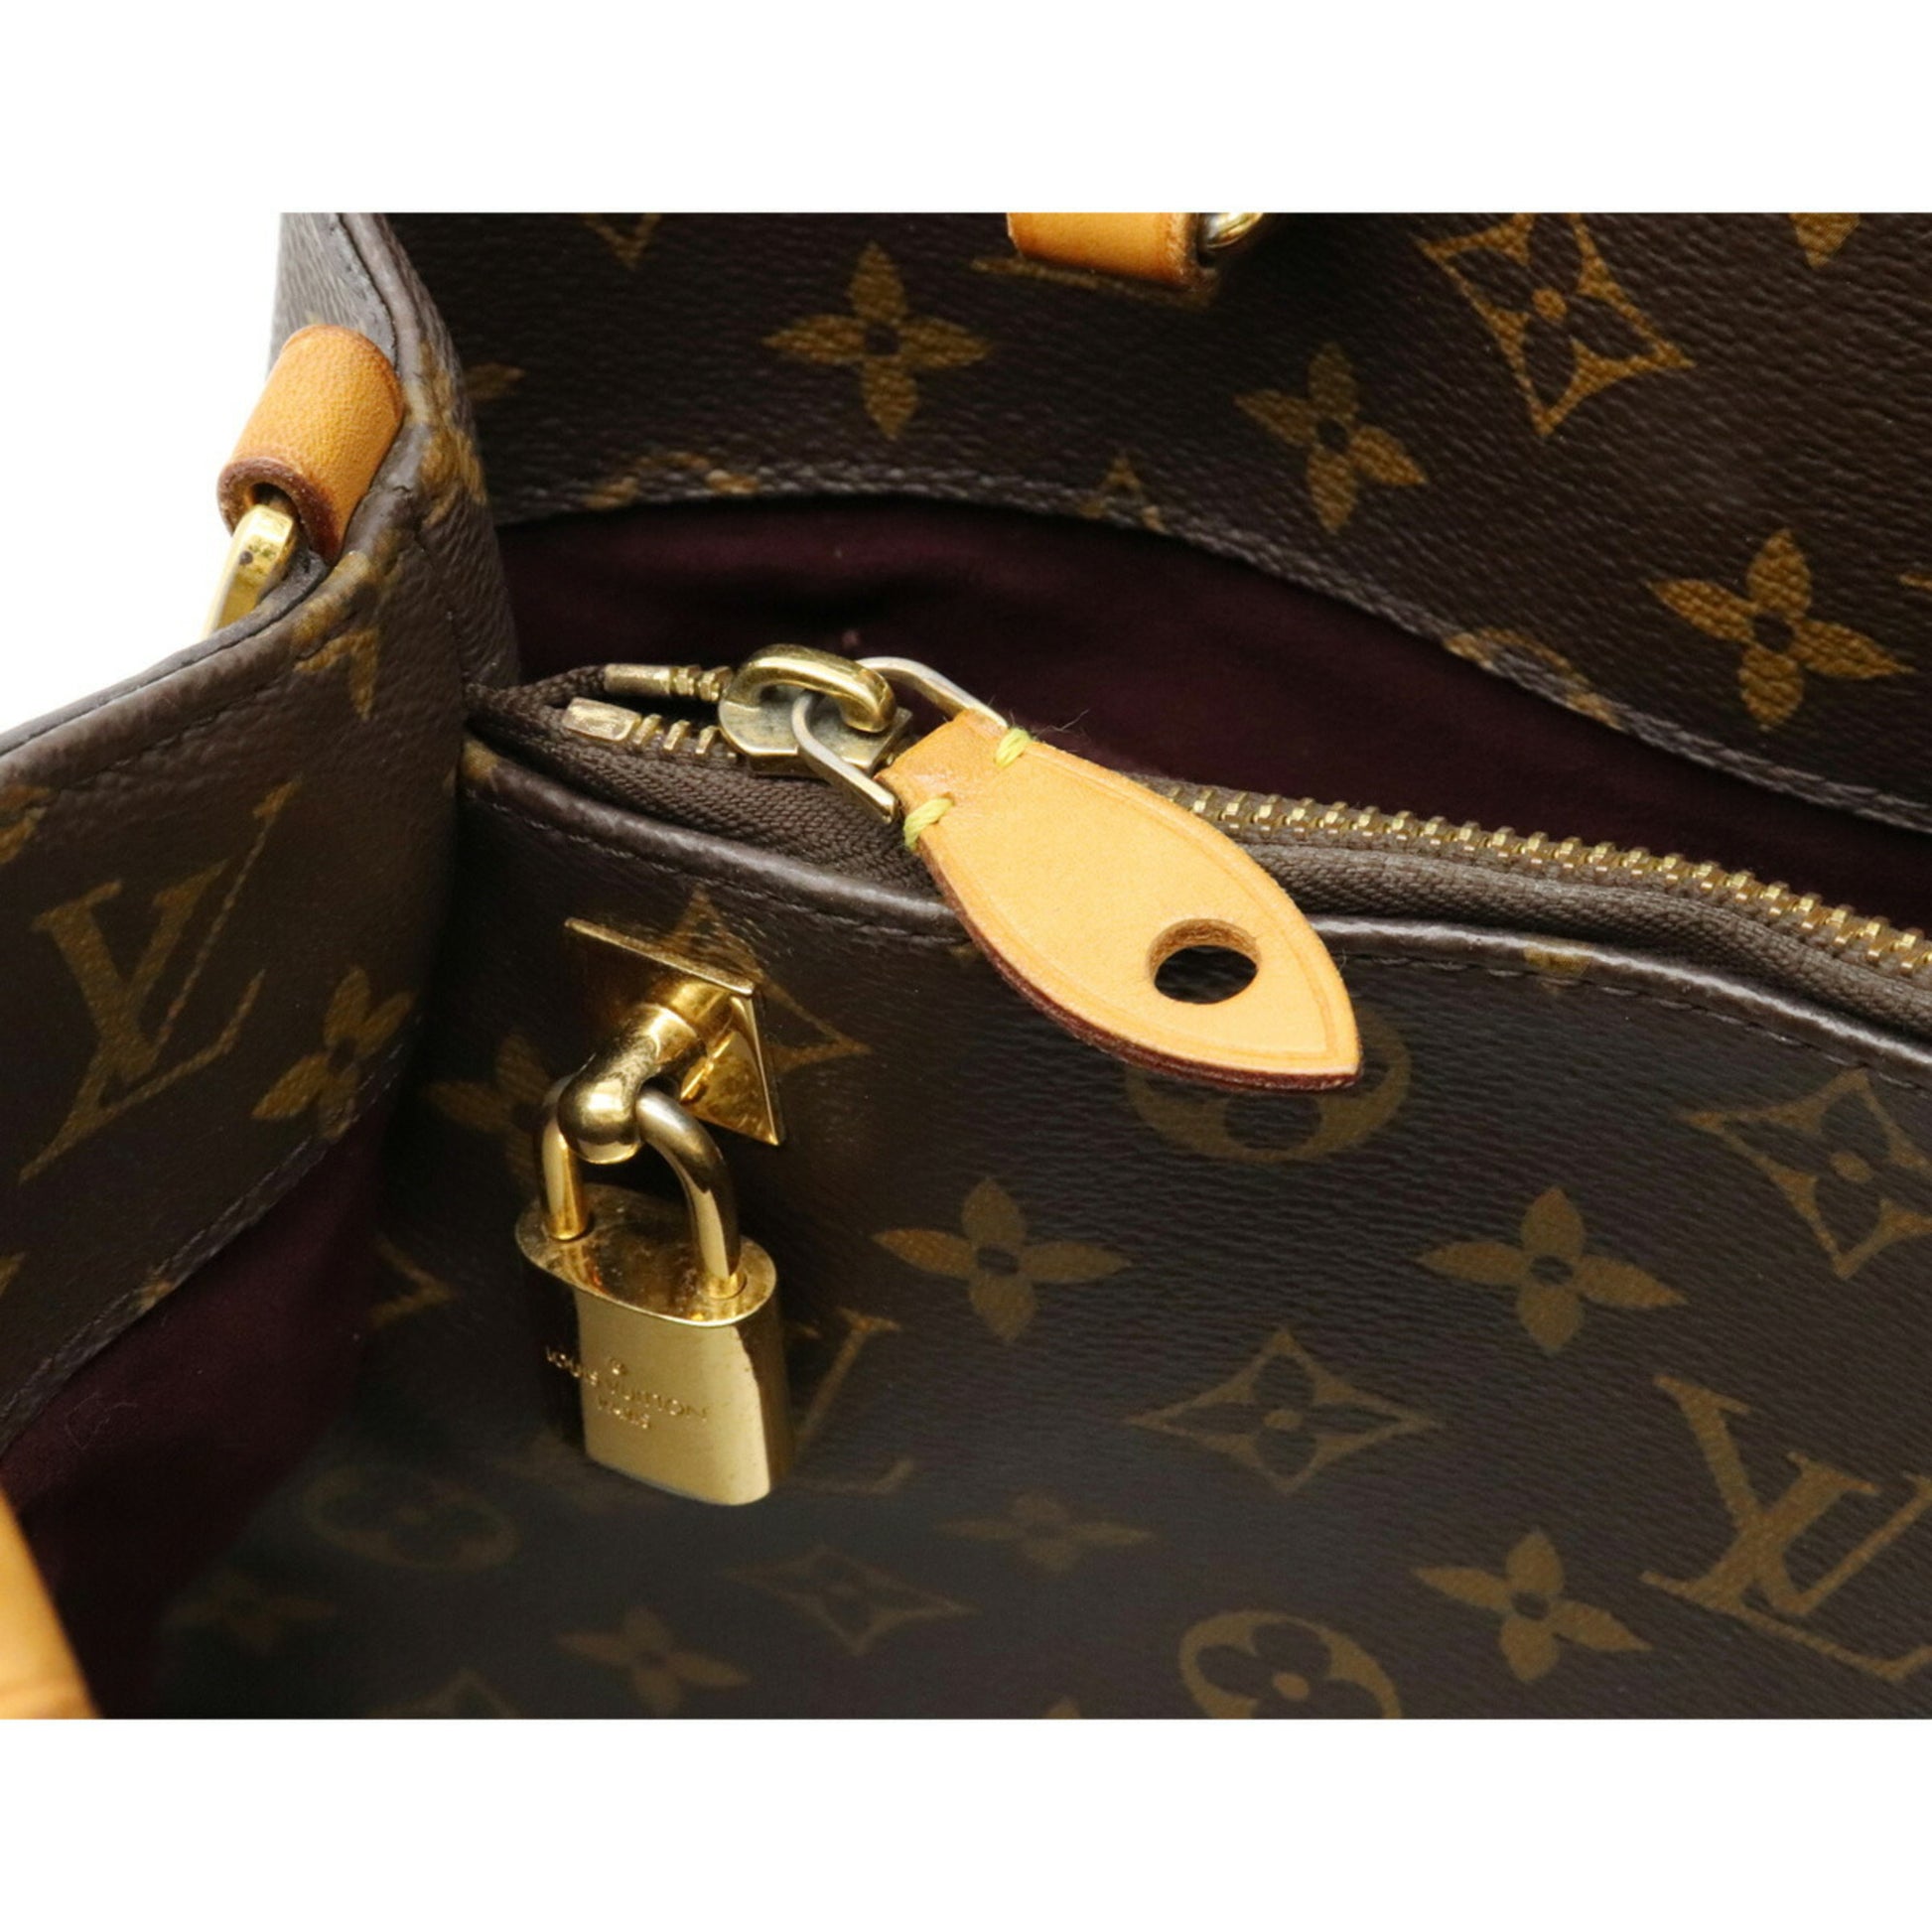 Shop Louis Vuitton MONTAIGNE Montaigne mm (M41056) by OceanPalace